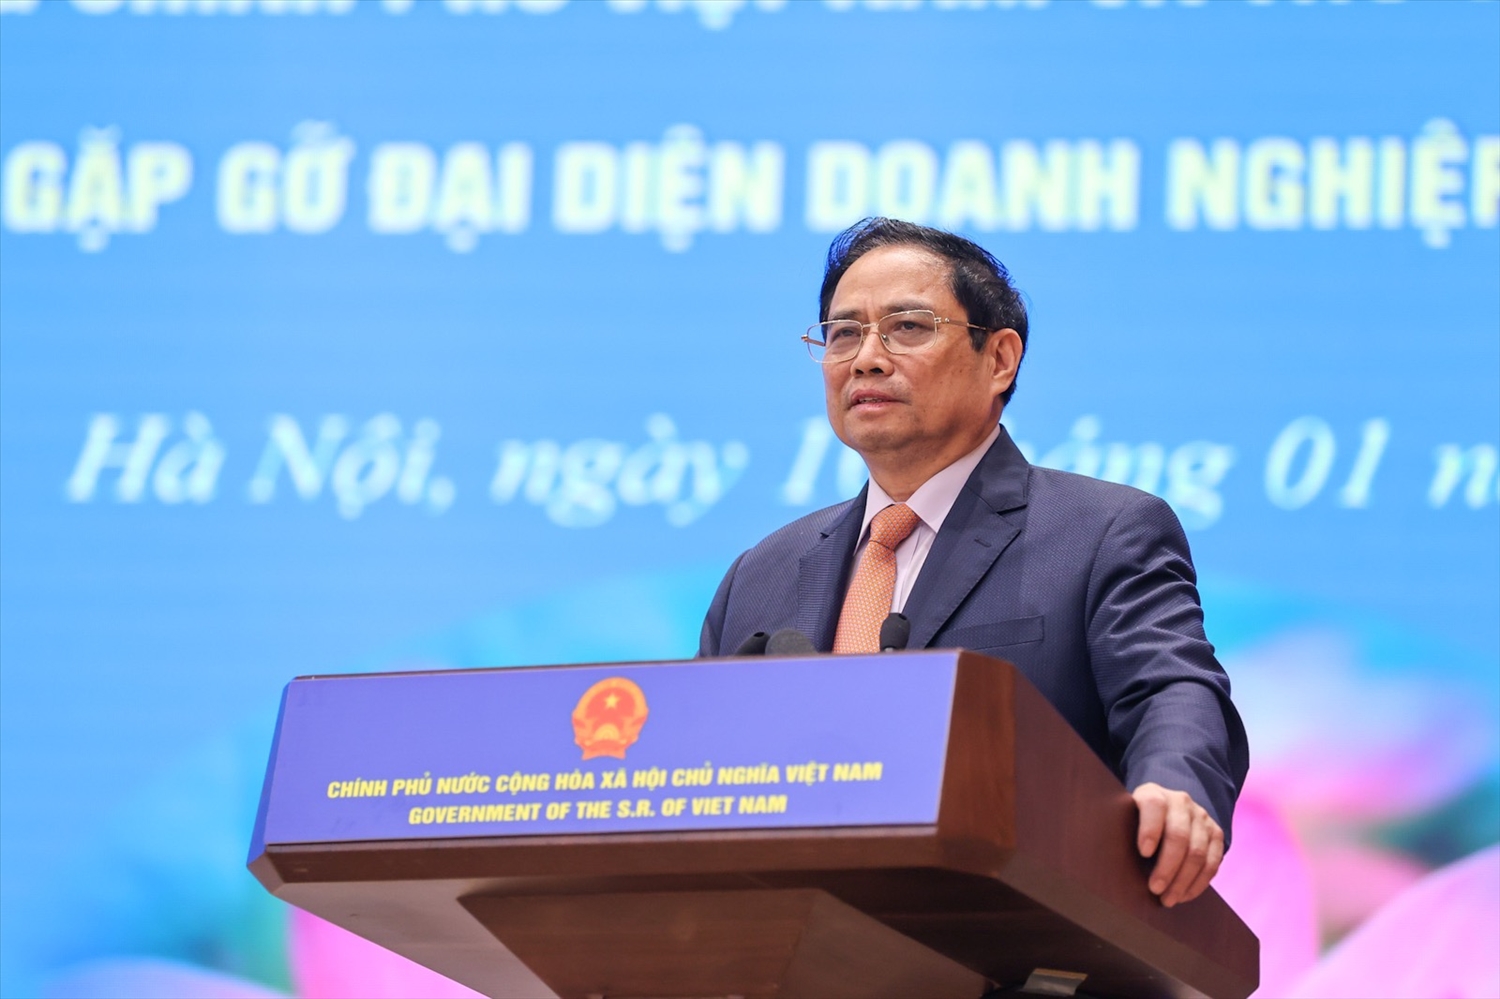 Thủ tướng Phạm Minh Chính nhấn mạnh, cần tăng cường tính kết nối, bổ trợ giữa hai nền kinh tế Việt Nam - Lào, trọng tâm là thể chế, tài chính, hạ tầng giao thông vận tải, năng lượng điện, viễn thông, du lịch - Ảnh: VGP/Nhật Bắc